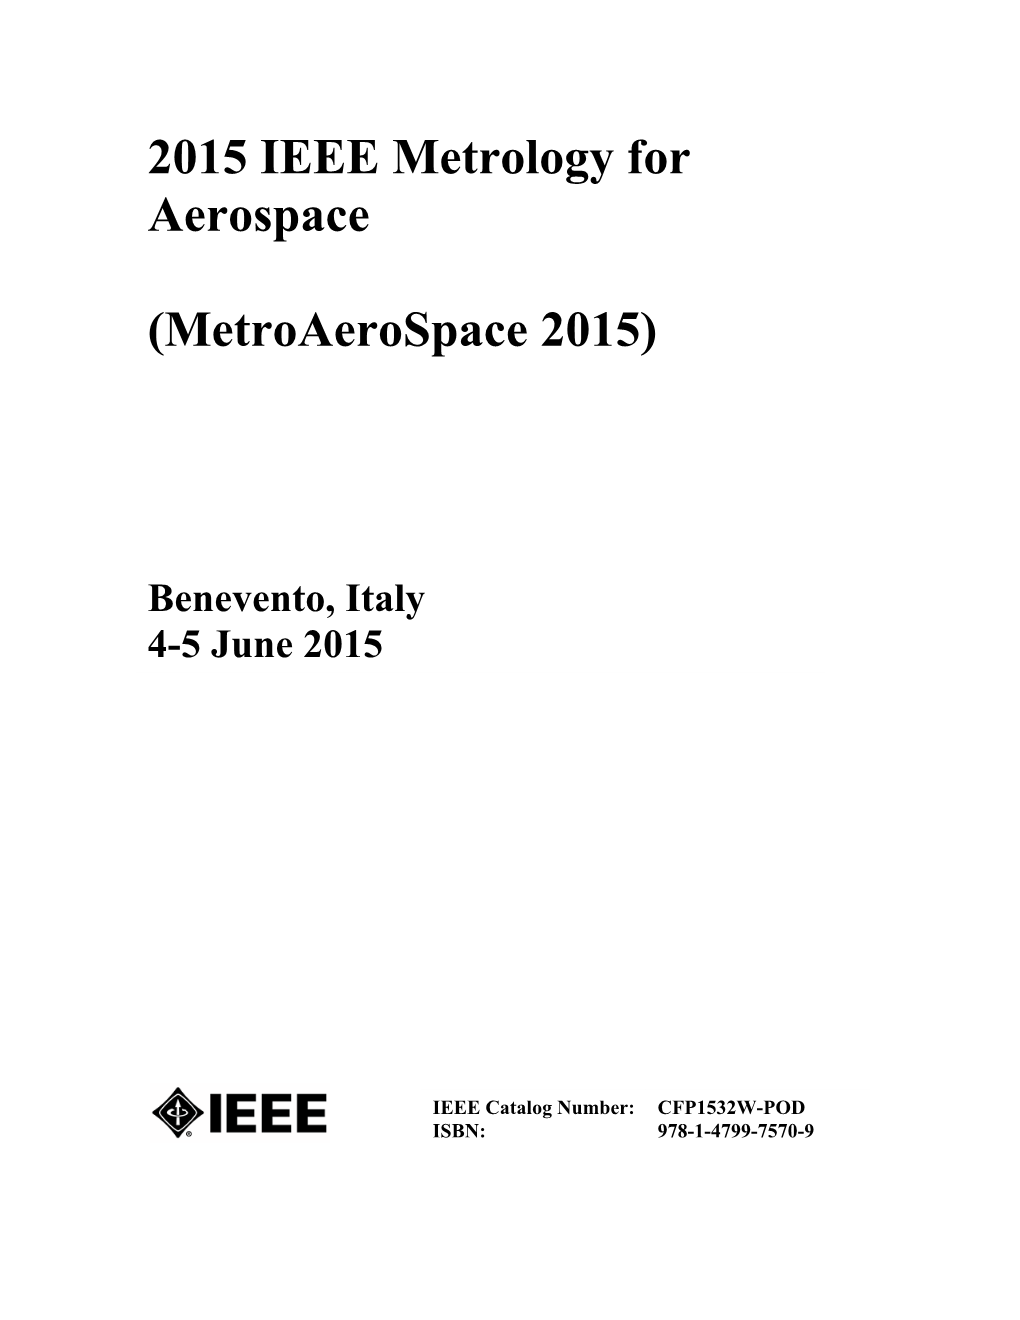 2015 IEEE Metrology for Aerospace